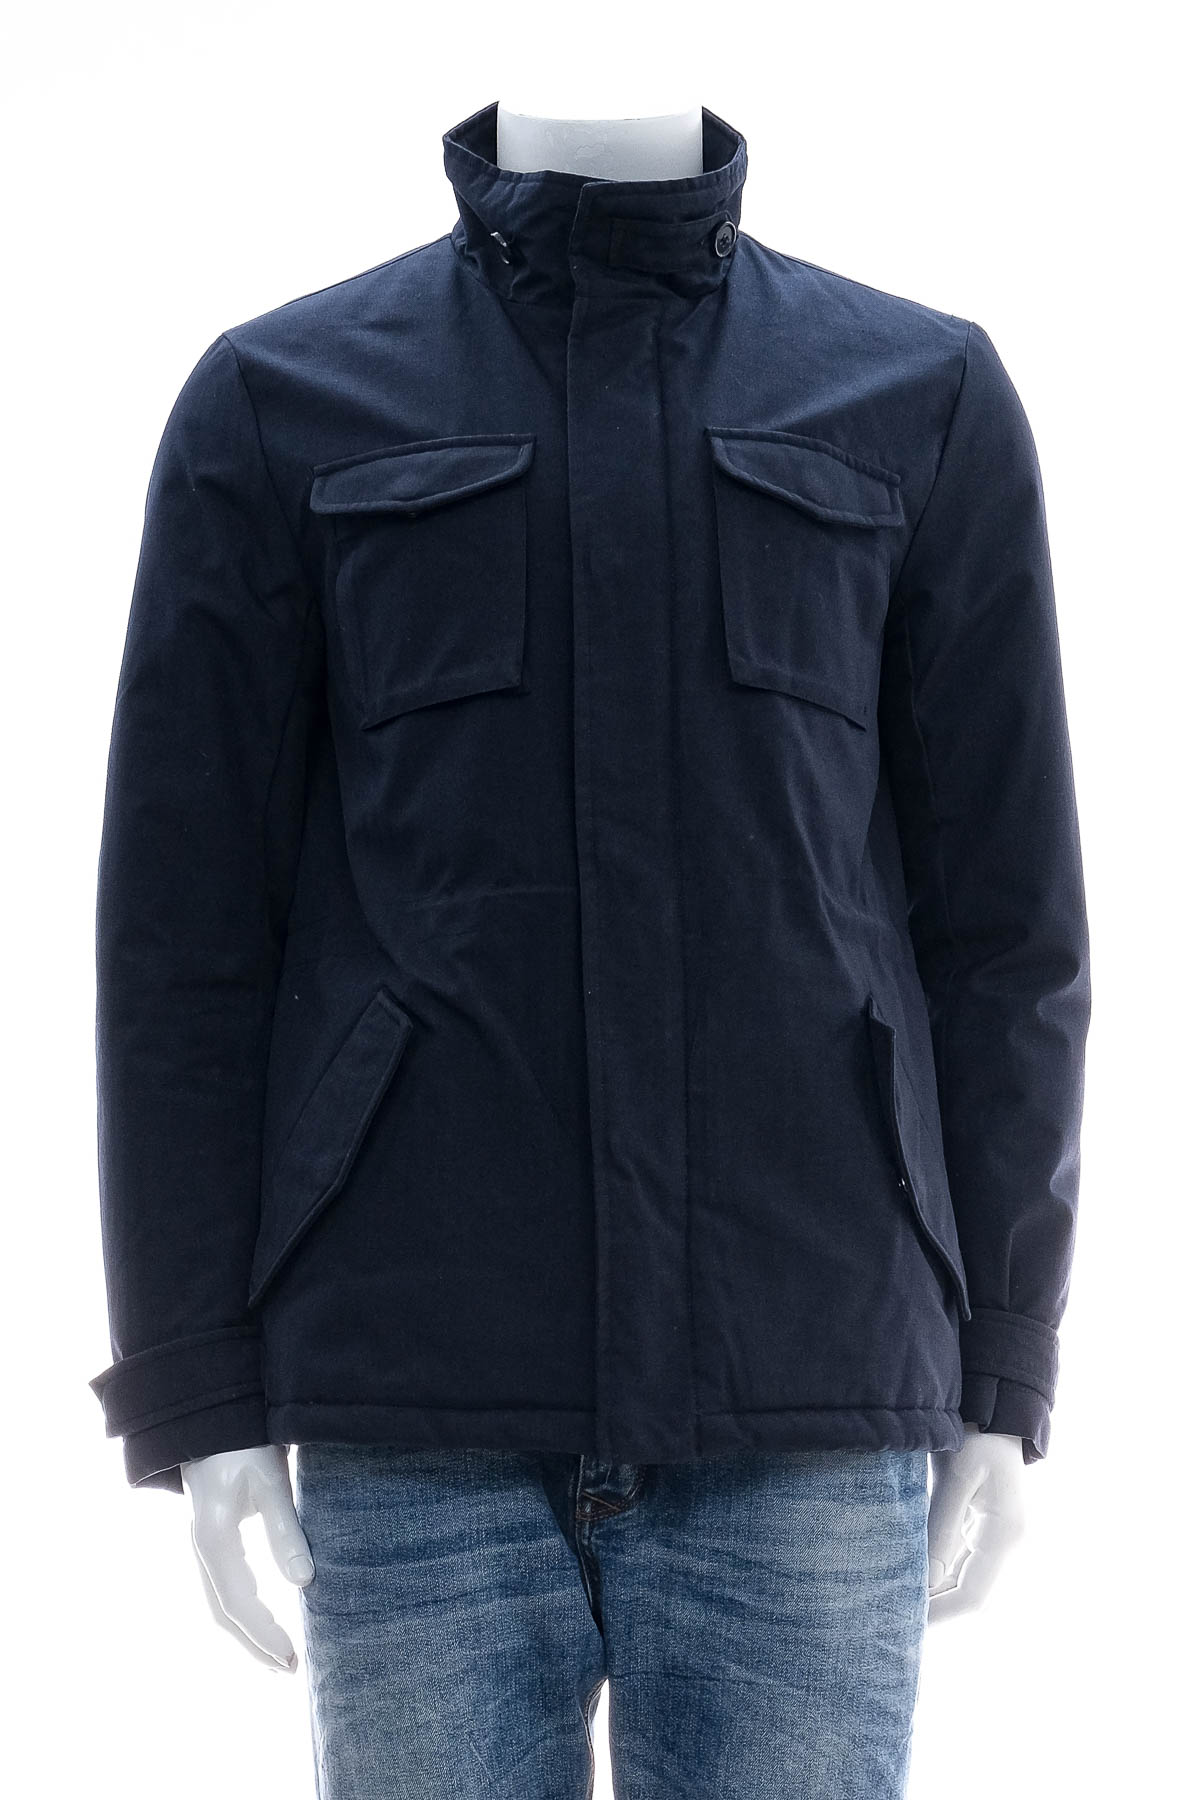 Men's jacket - Conbipel - 0